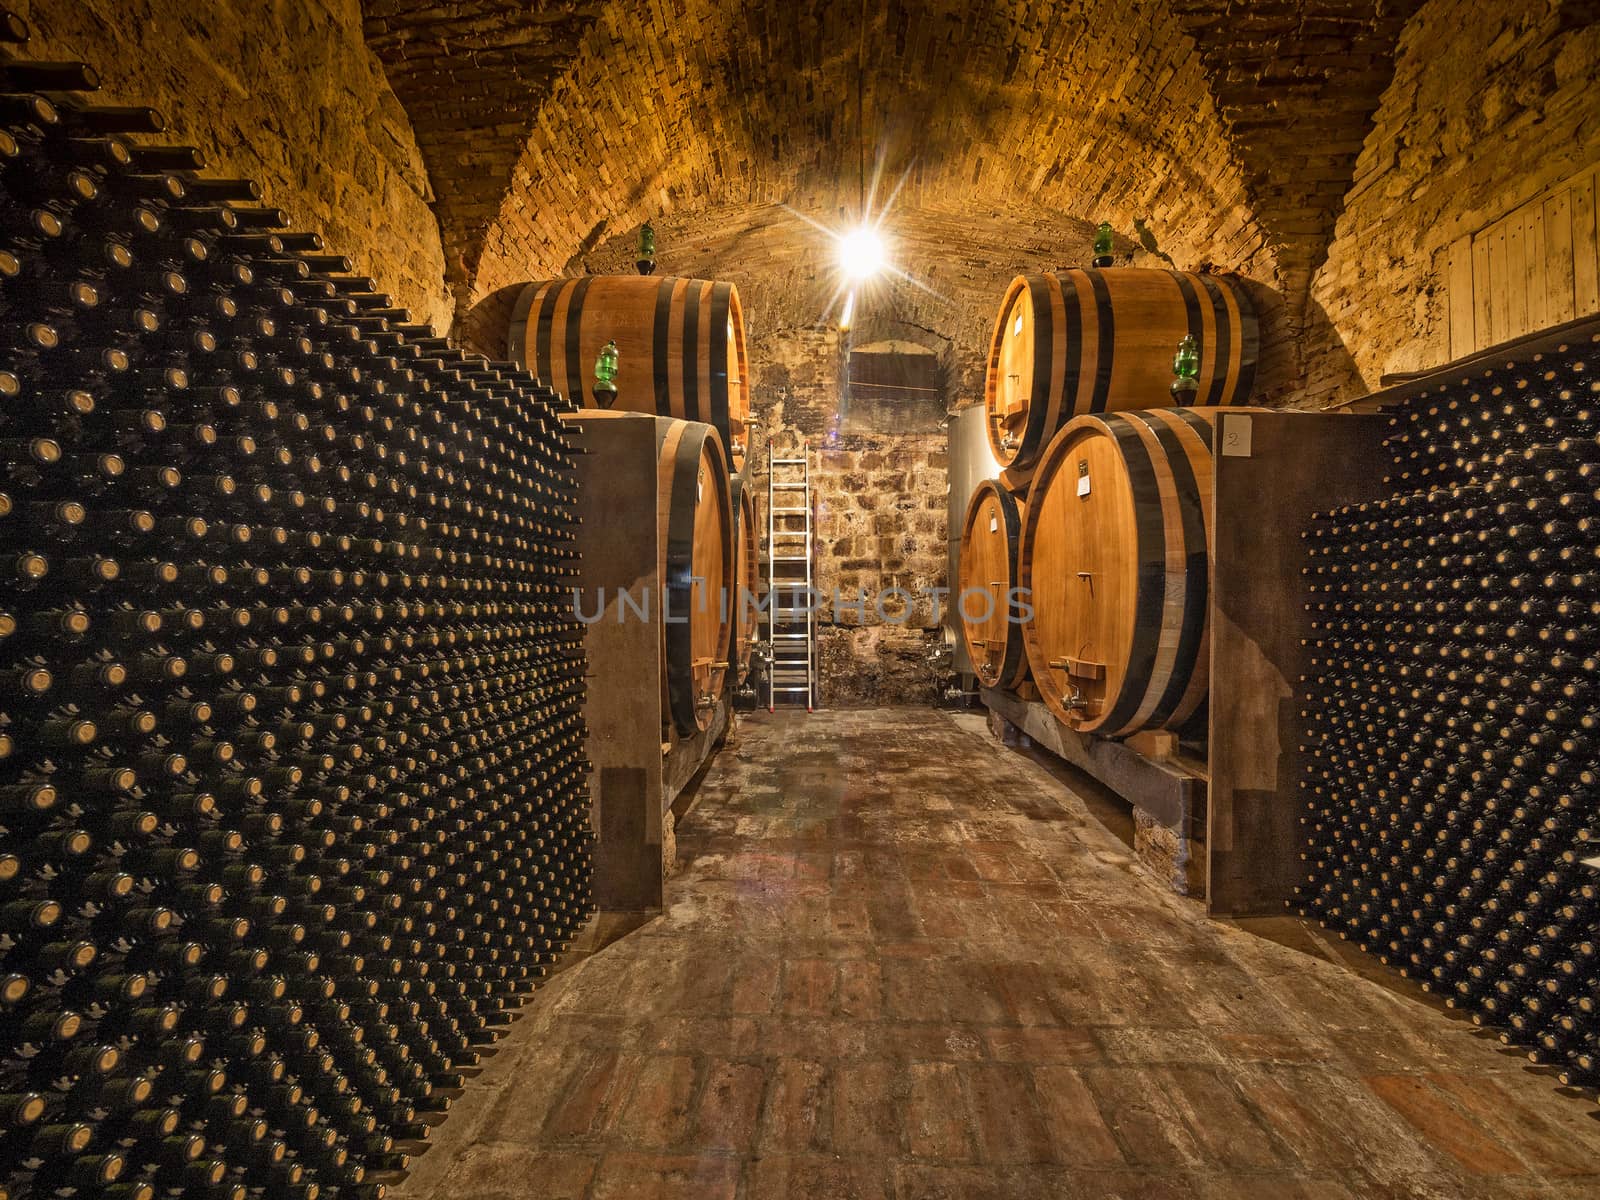 wine bottles and oak barrels in winery cellar